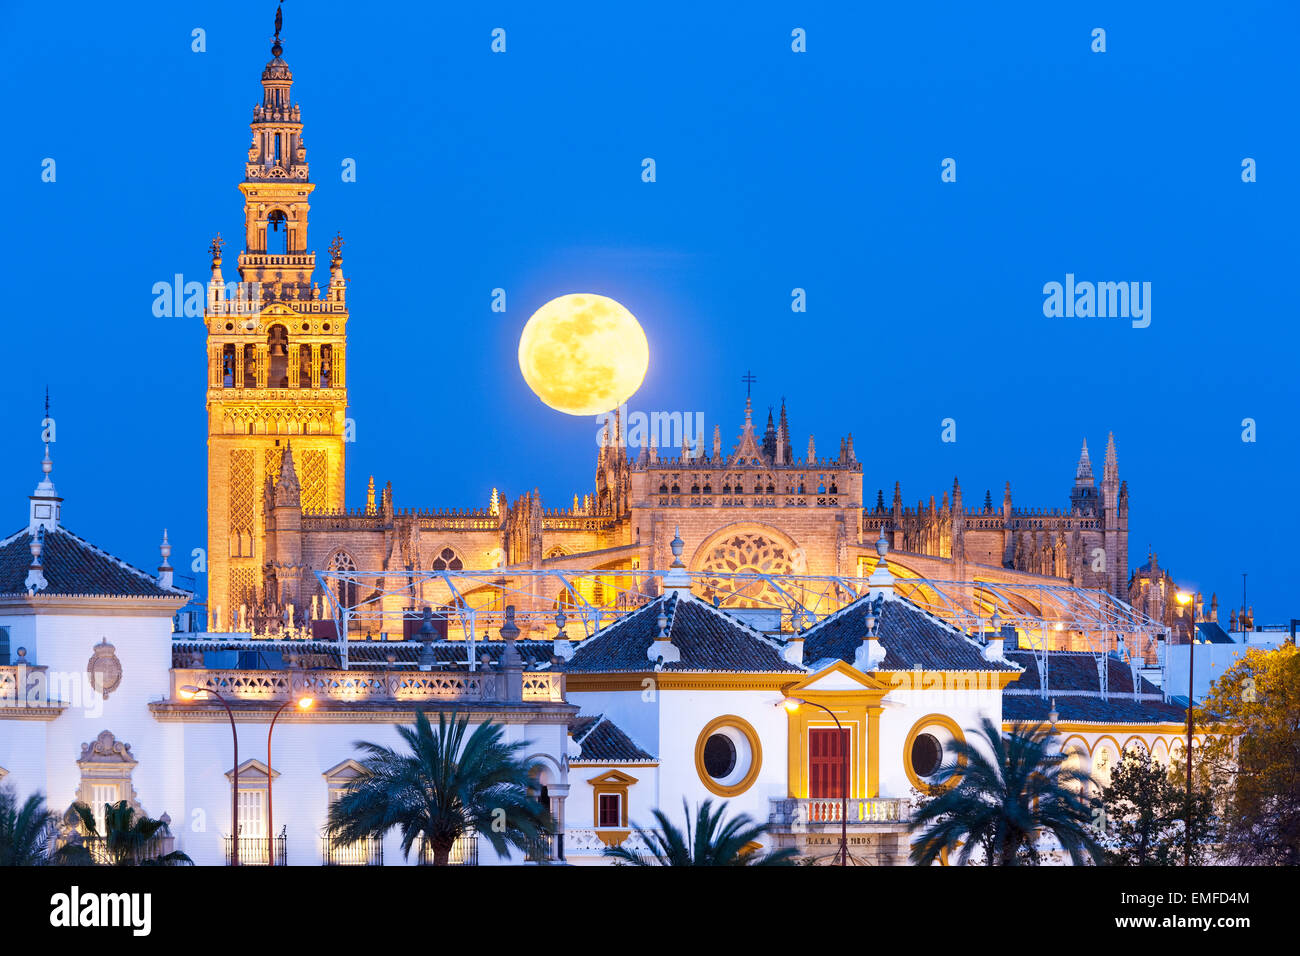 Sevilla España Sevilla Skyline con luna llena ascendiendo detrás de la Giralda, Sevilla La Catedral de Sevilla y la Plaza de Toros Foto de stock